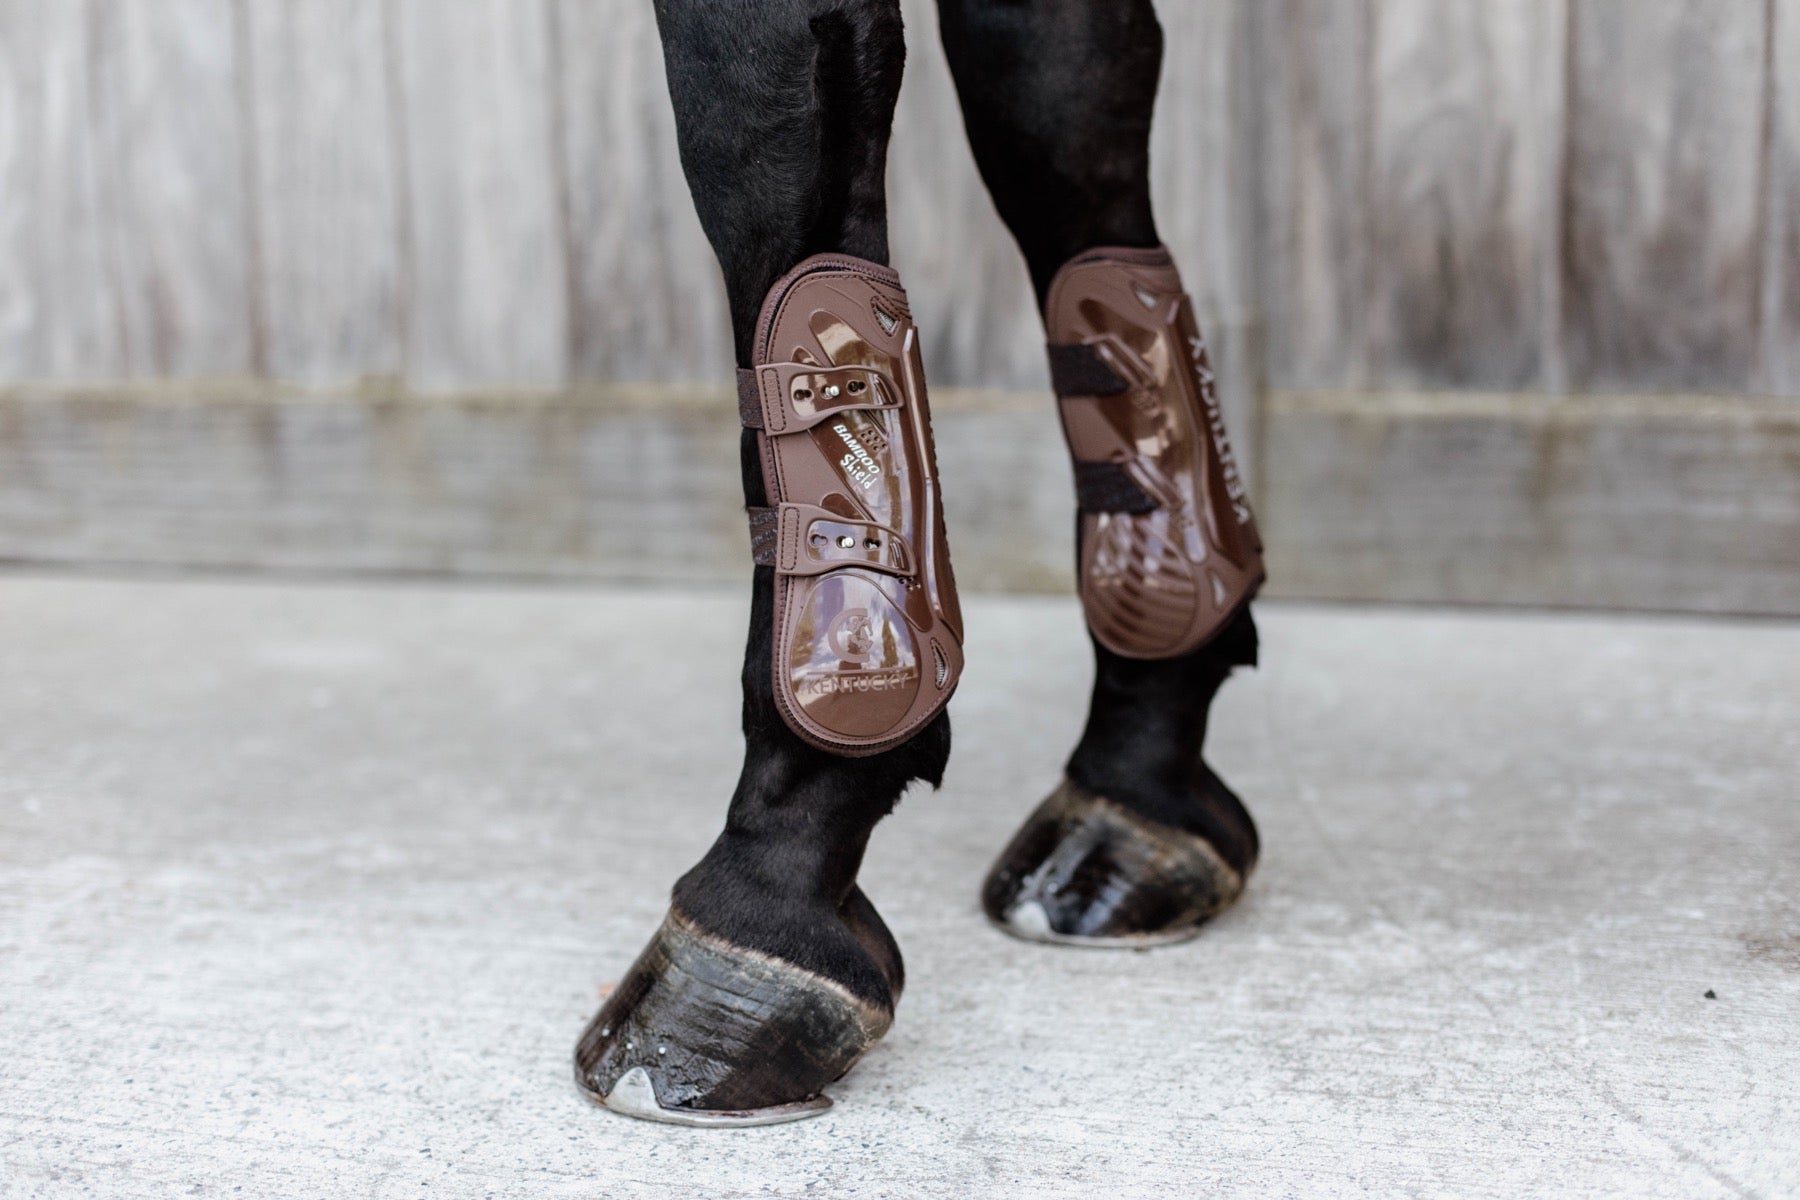 Kentucky Horsewear Bamboo Tendon Boots, Brown